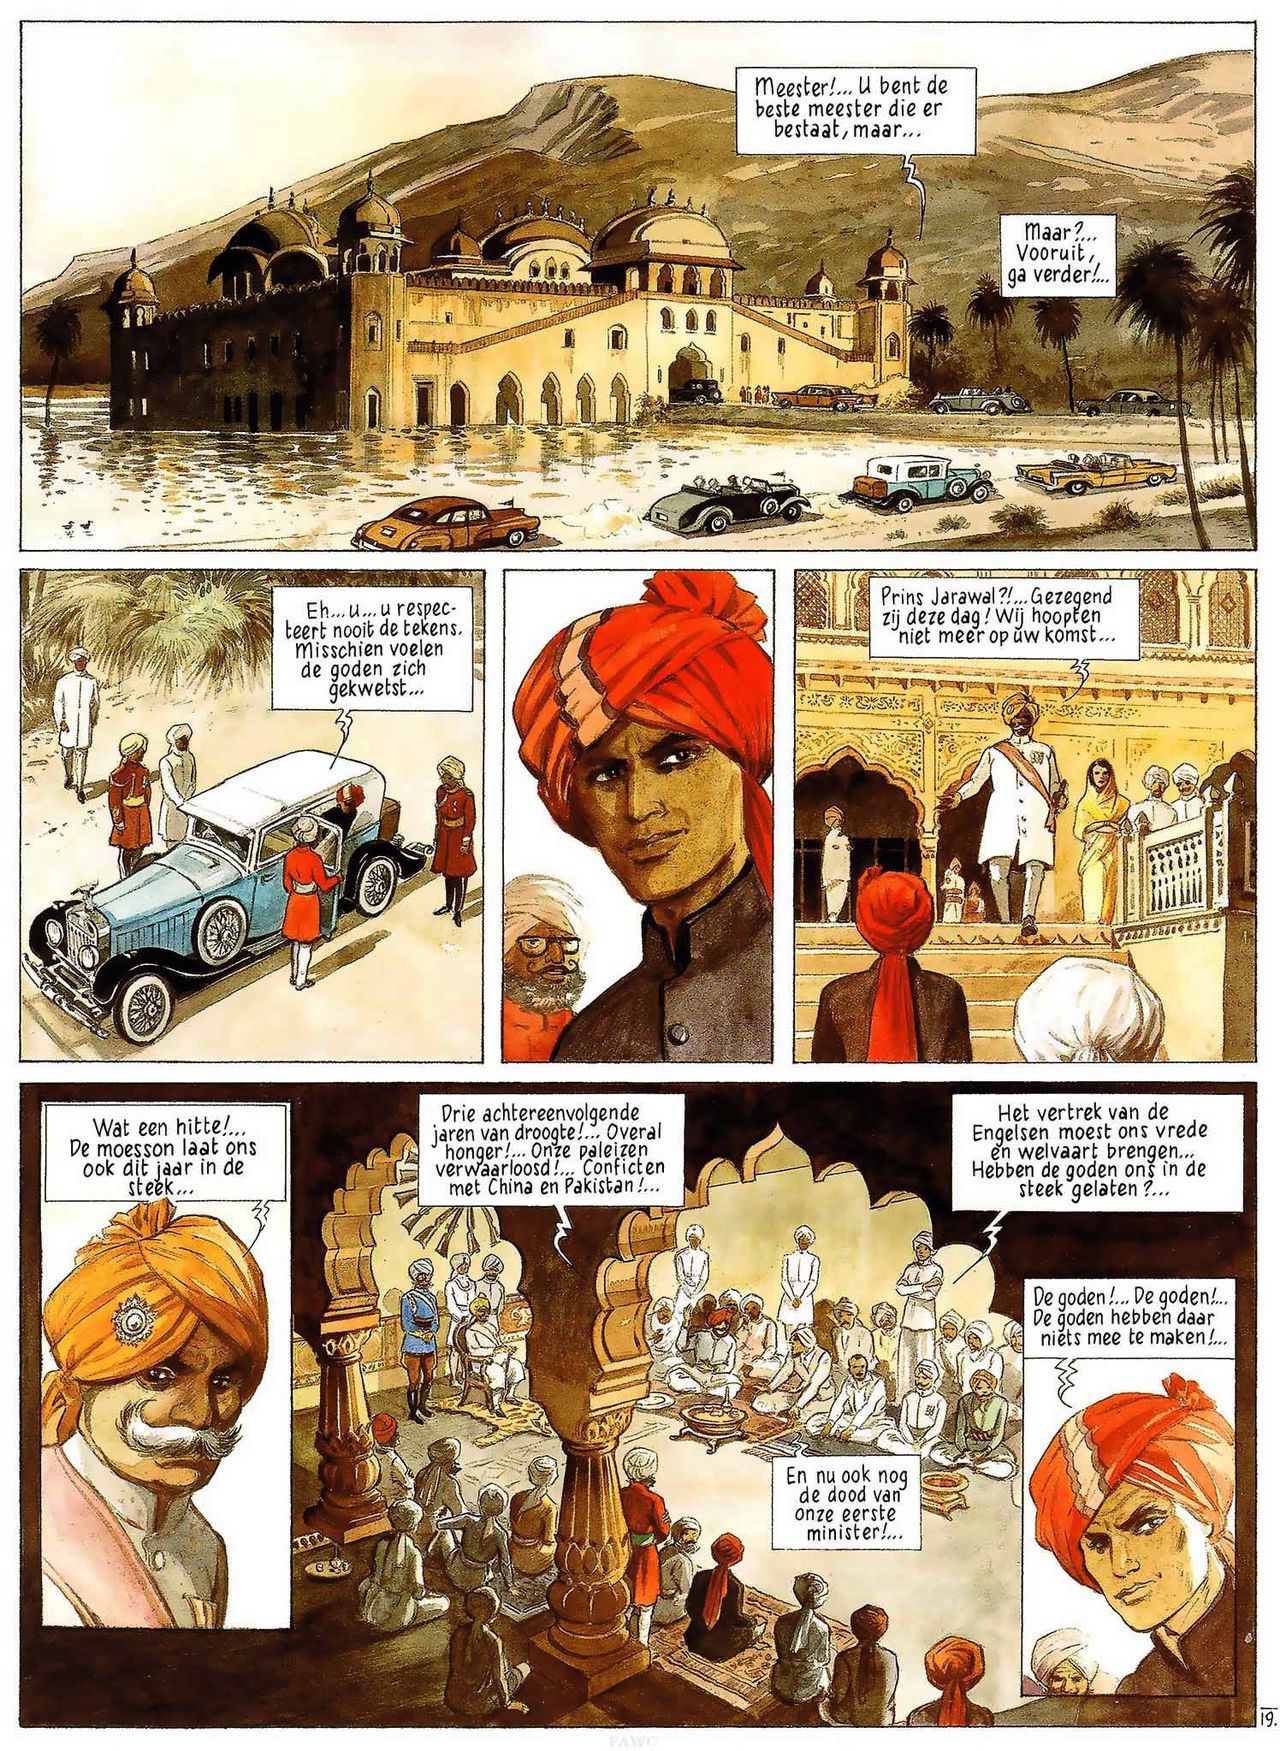 India Dreams - 03 - In De Schaduw Van De Bougainvilles (Dutch) Engelstalige en Duitse strips die op deze site staan, hier is de Nederlandse uitgave! 21